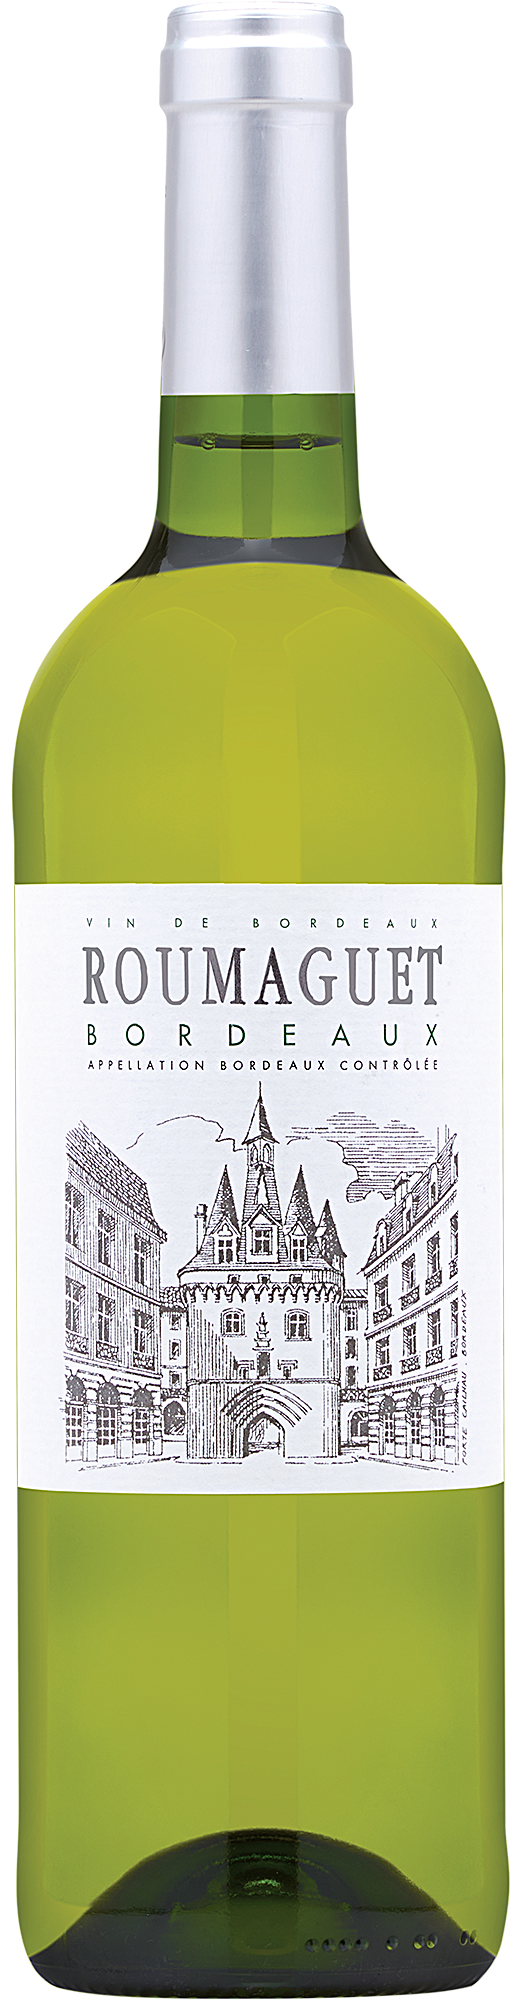 2020 Roumaguet Bordeaux Blanc